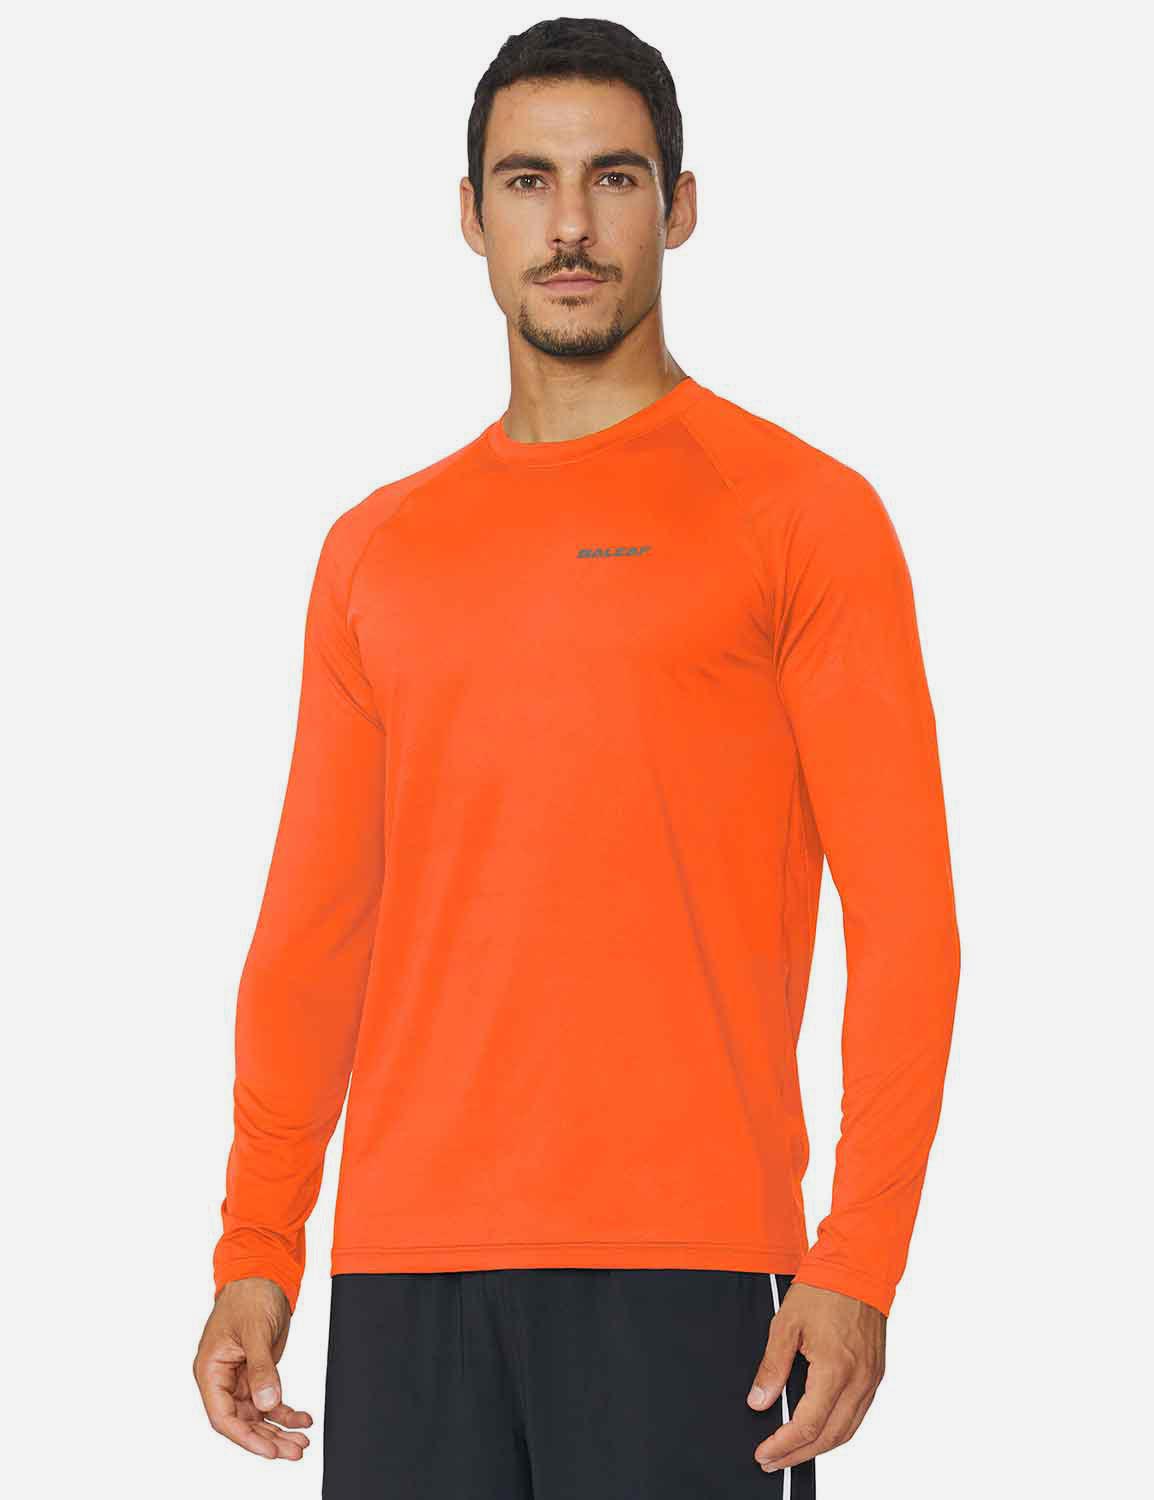 Baleaf Men's Workout Crew-Neck Slim-Cut Long Sleeved Shirt abd195 Orange Side